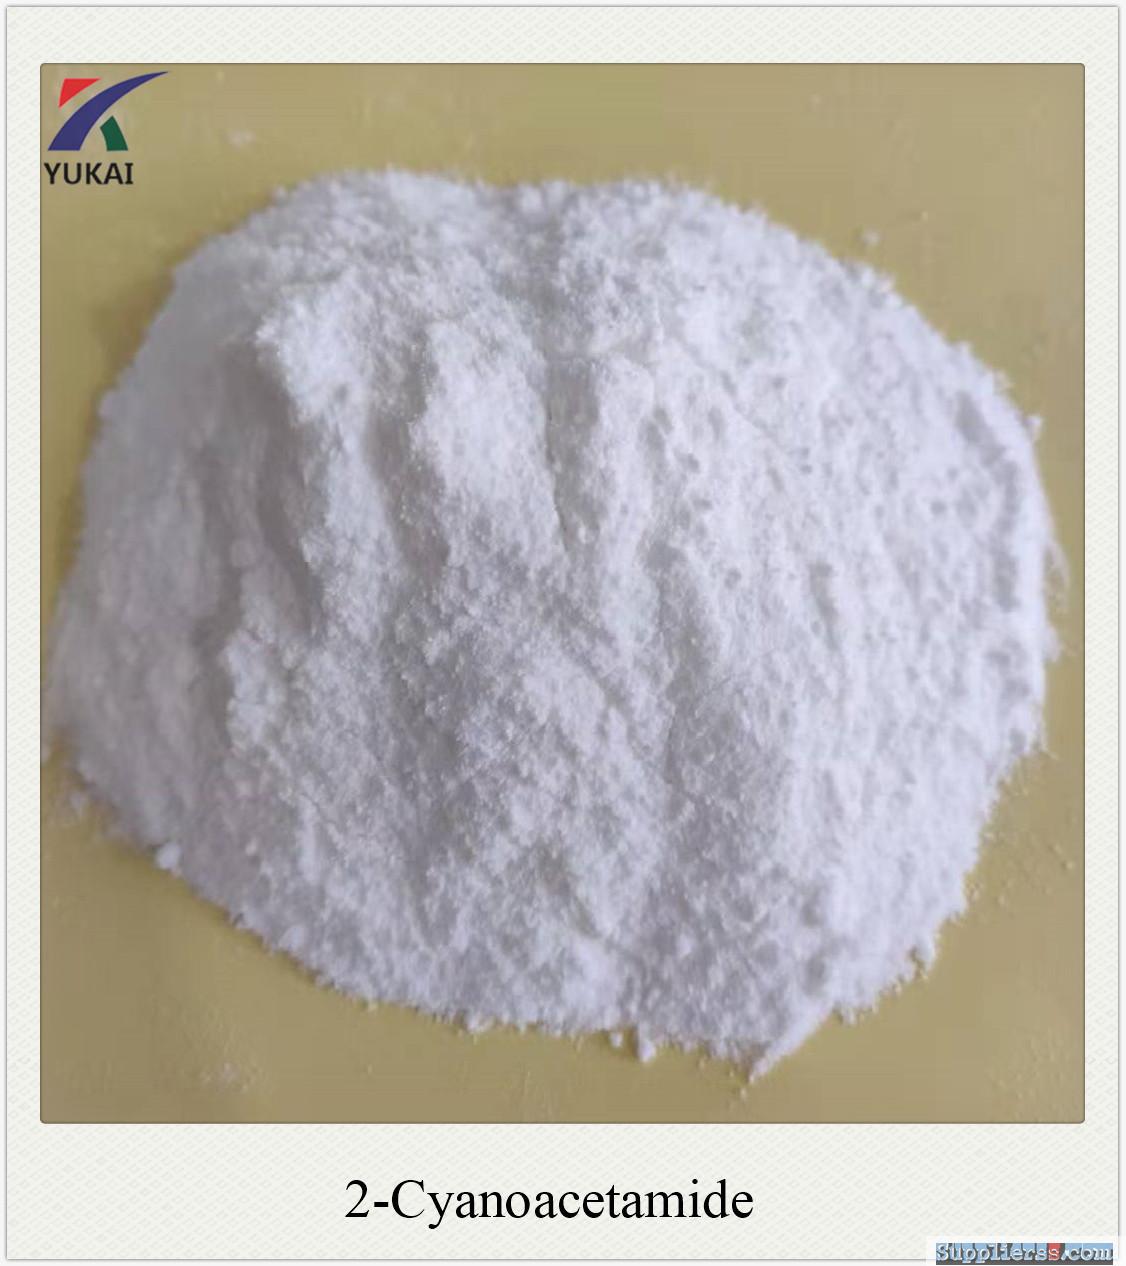 2-Cyanoacetamide 99% CAS NO 107-91-5 Intermediates Crystalline Powder